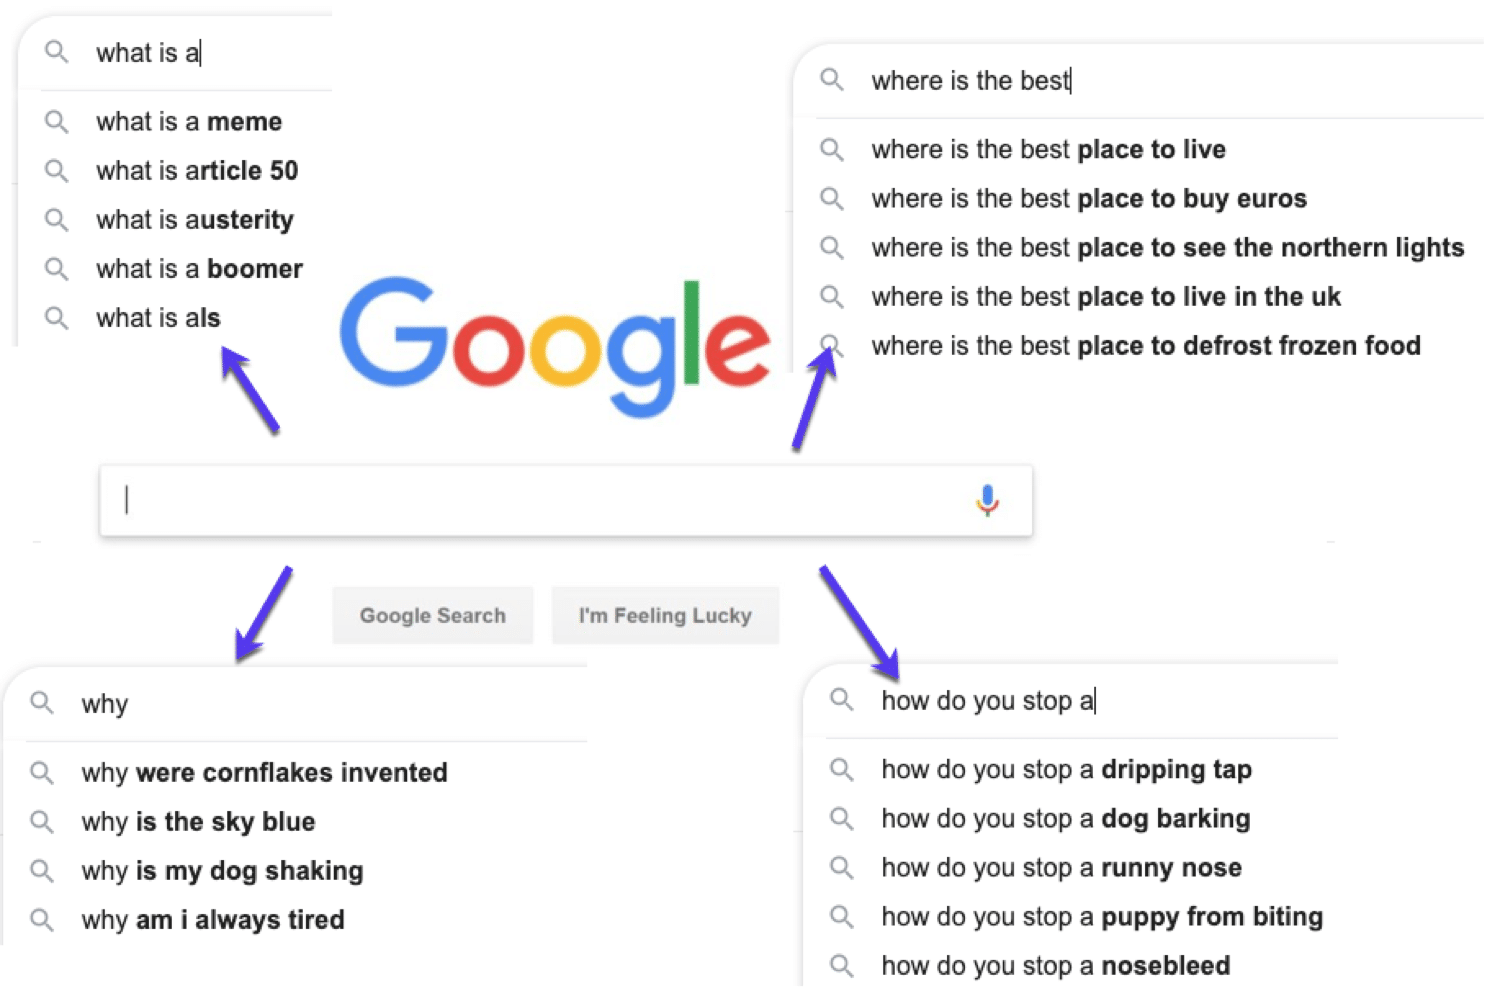 Exemplos de perguntas que as pessoas pesquisam no Google